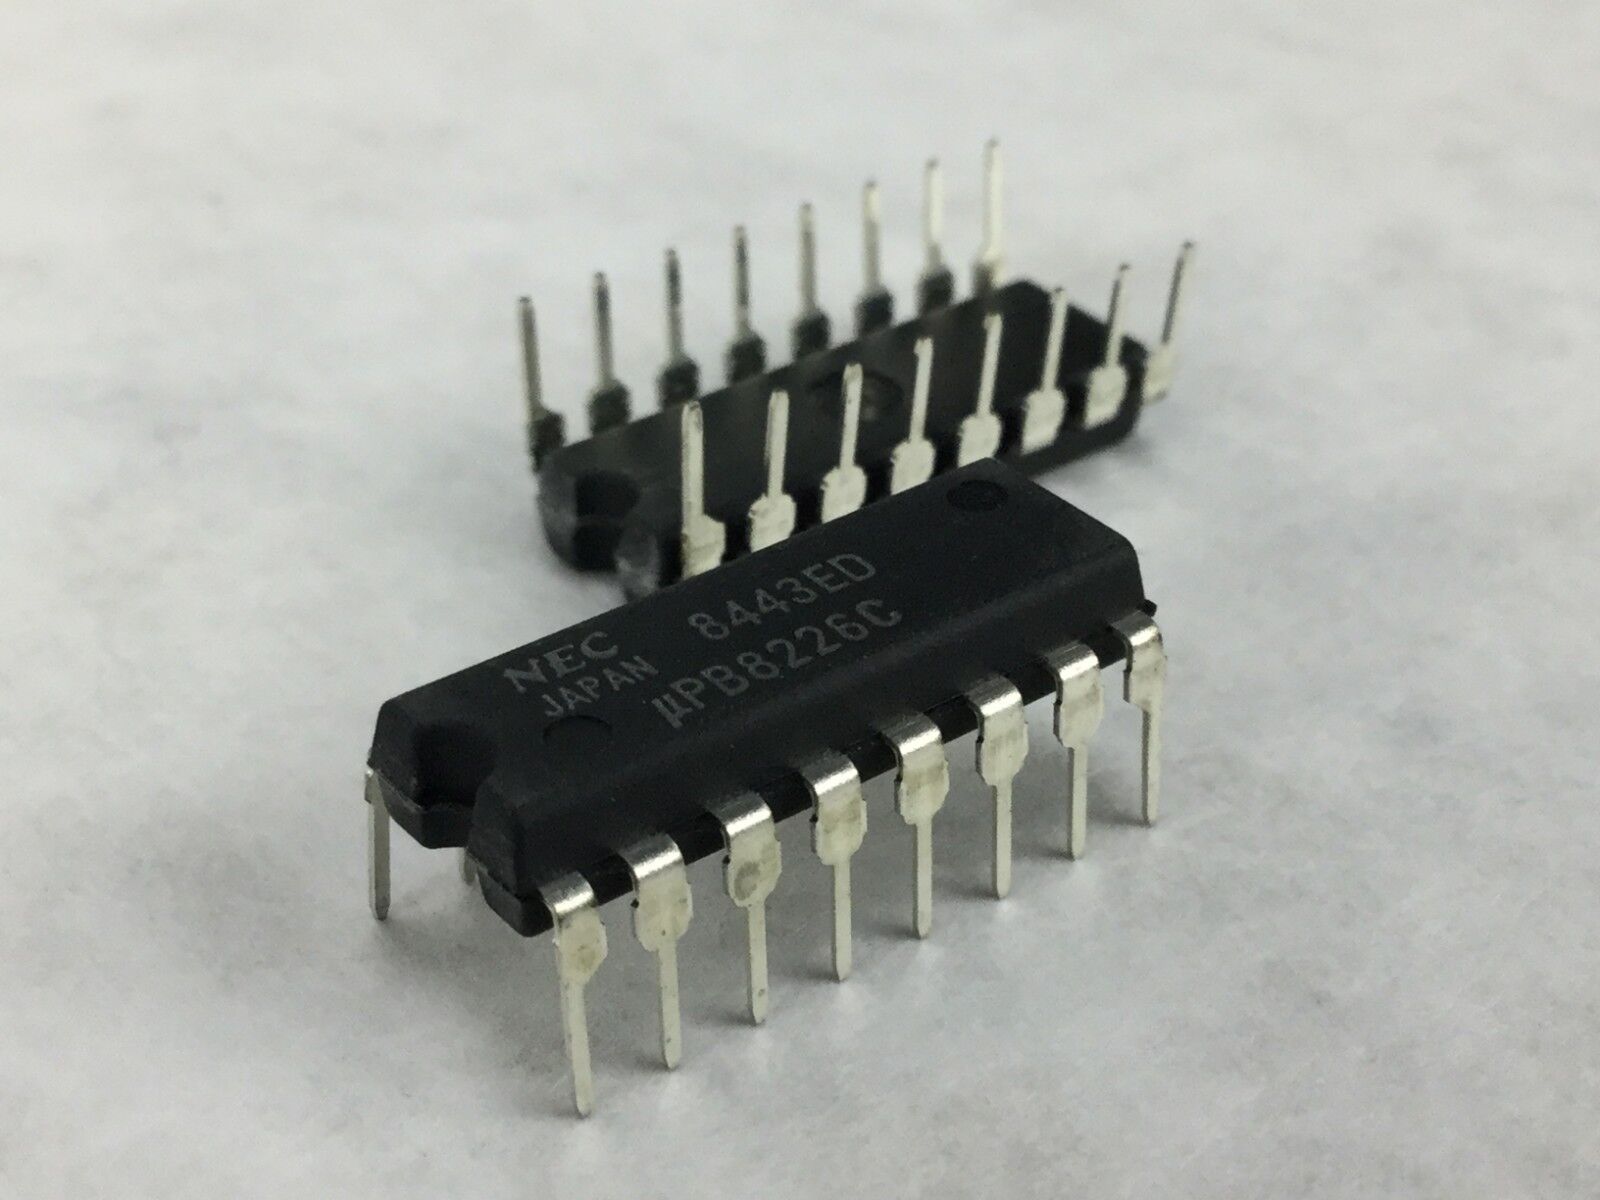 NEC  8443ED  PB8226C  Transistor  16 Pin  Lot of 10    NEW